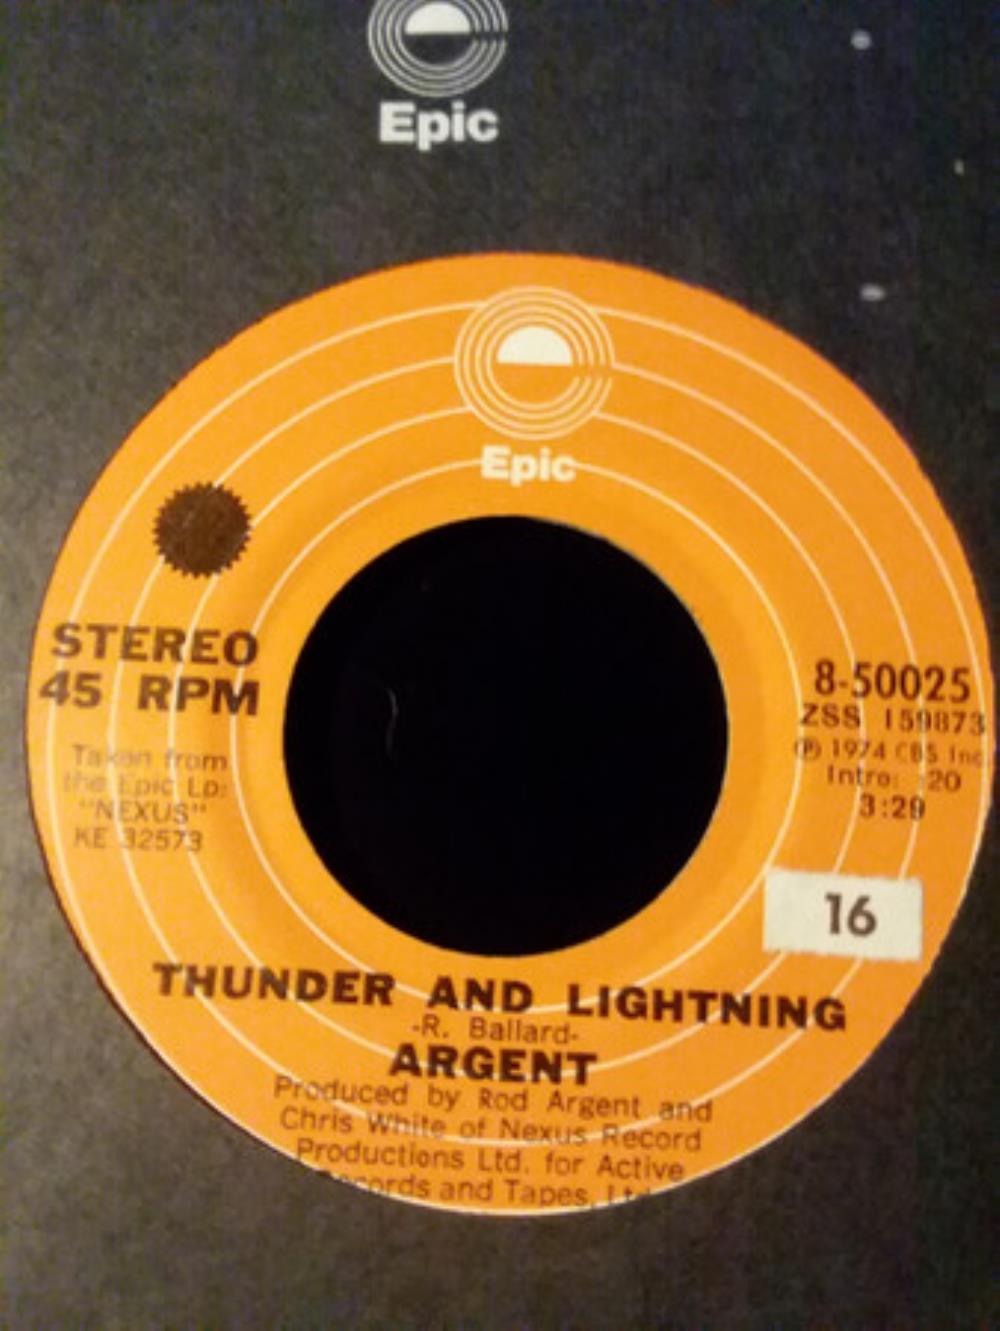 Argent Thunder and Lightning album cover